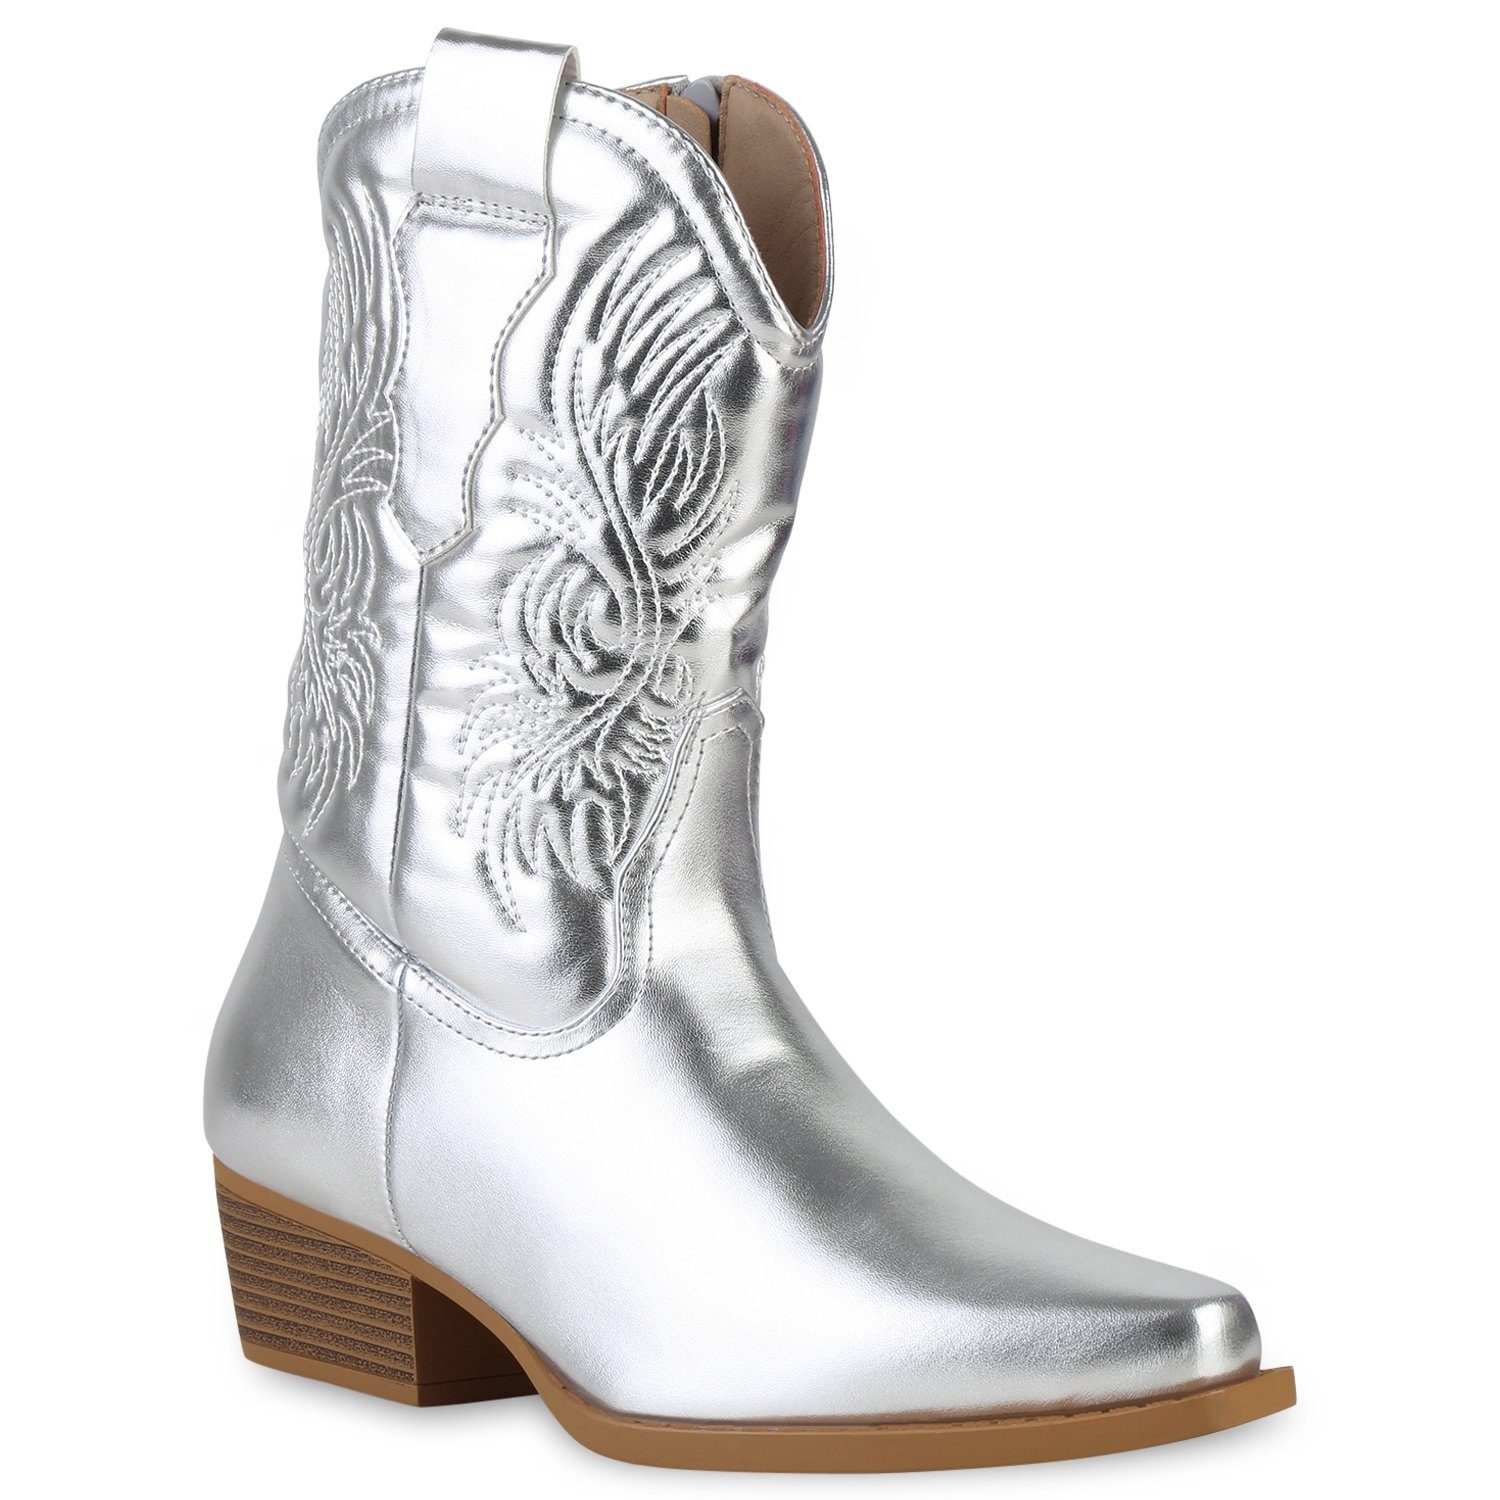 VAN HILL 840254 Cowboy Boots Schuhe Silber